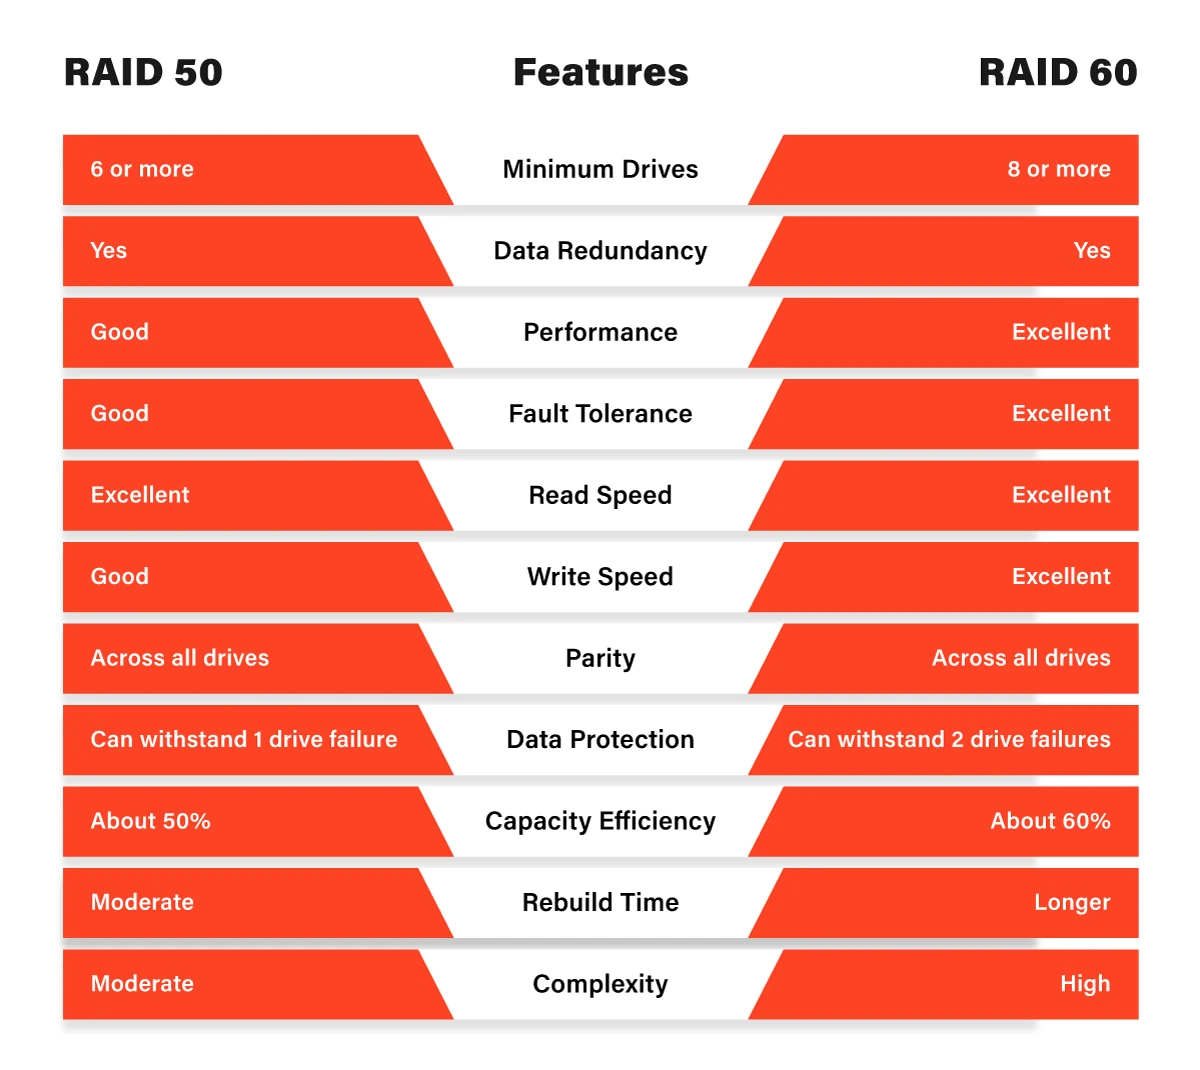 RAID 50 vs RAID 60